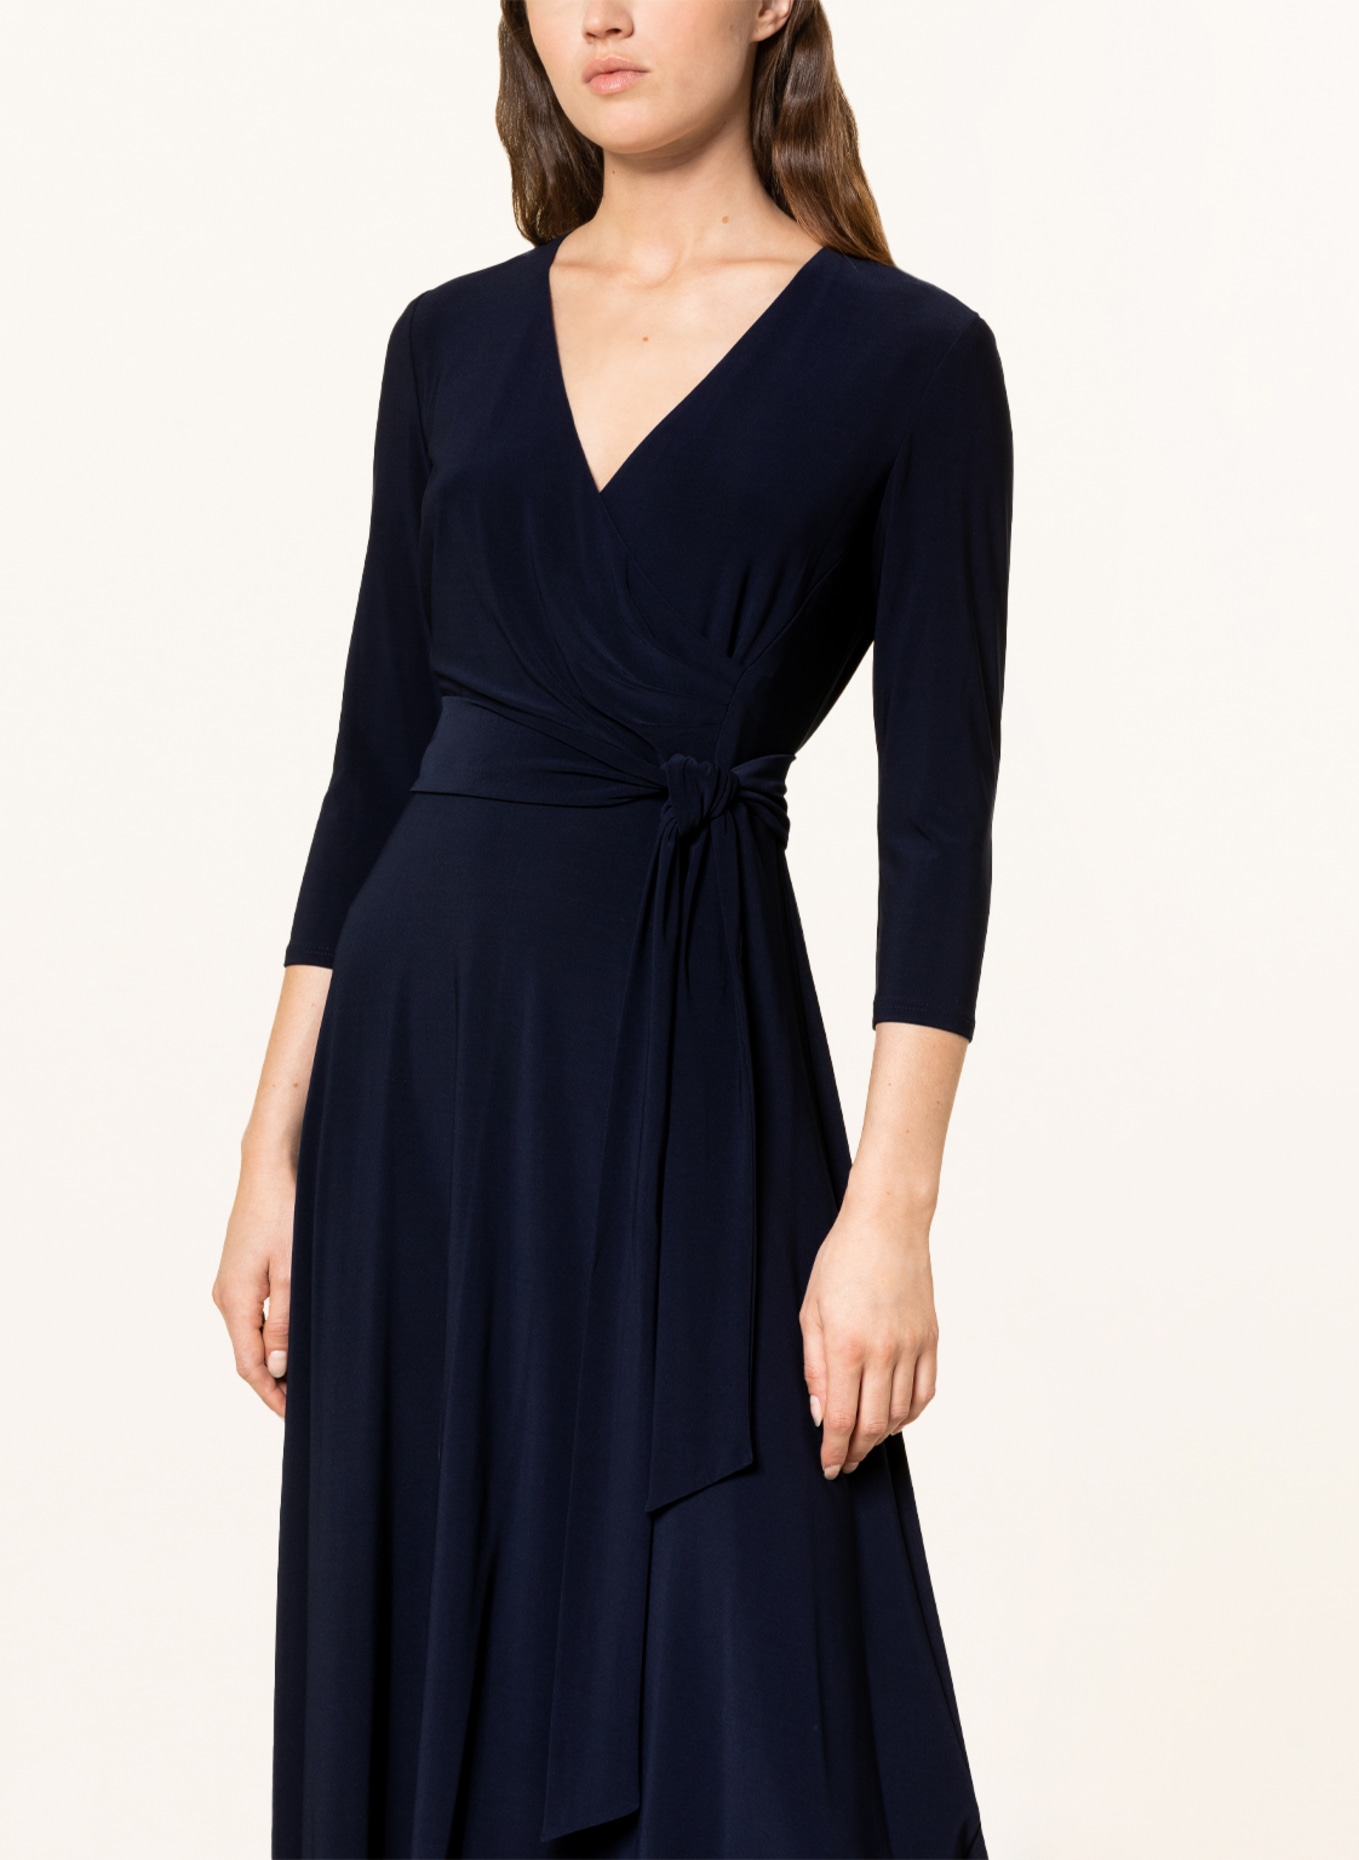 LAUREN RALPH LAUREN Dress with 3/4 sleeves, Color: DARK BLUE (Image 4)